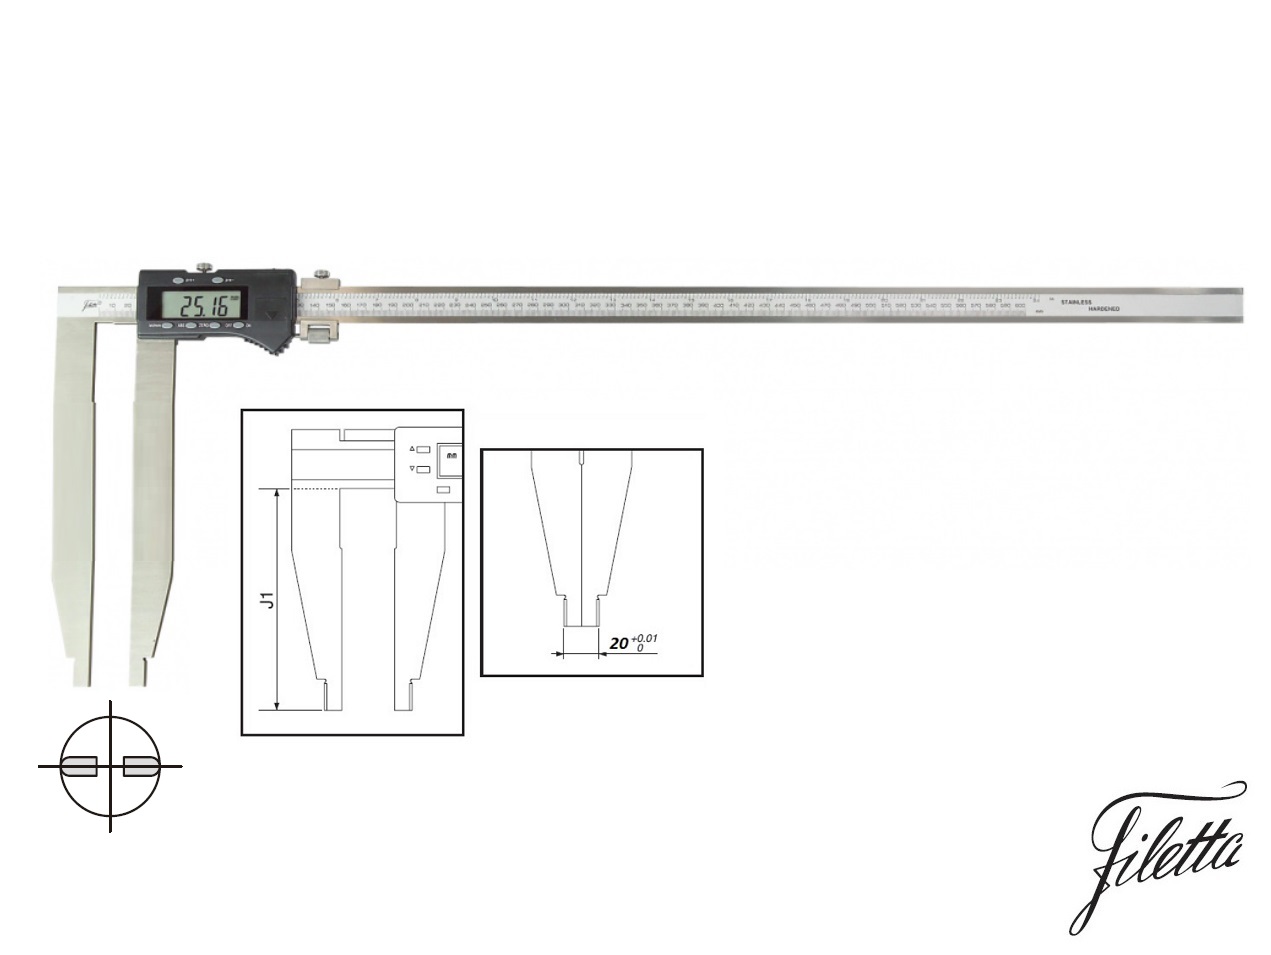 Digitální posuvné měřítko Filetta 0-2000 mm  bez nožíků, s měřicími čelistmi 300 mm